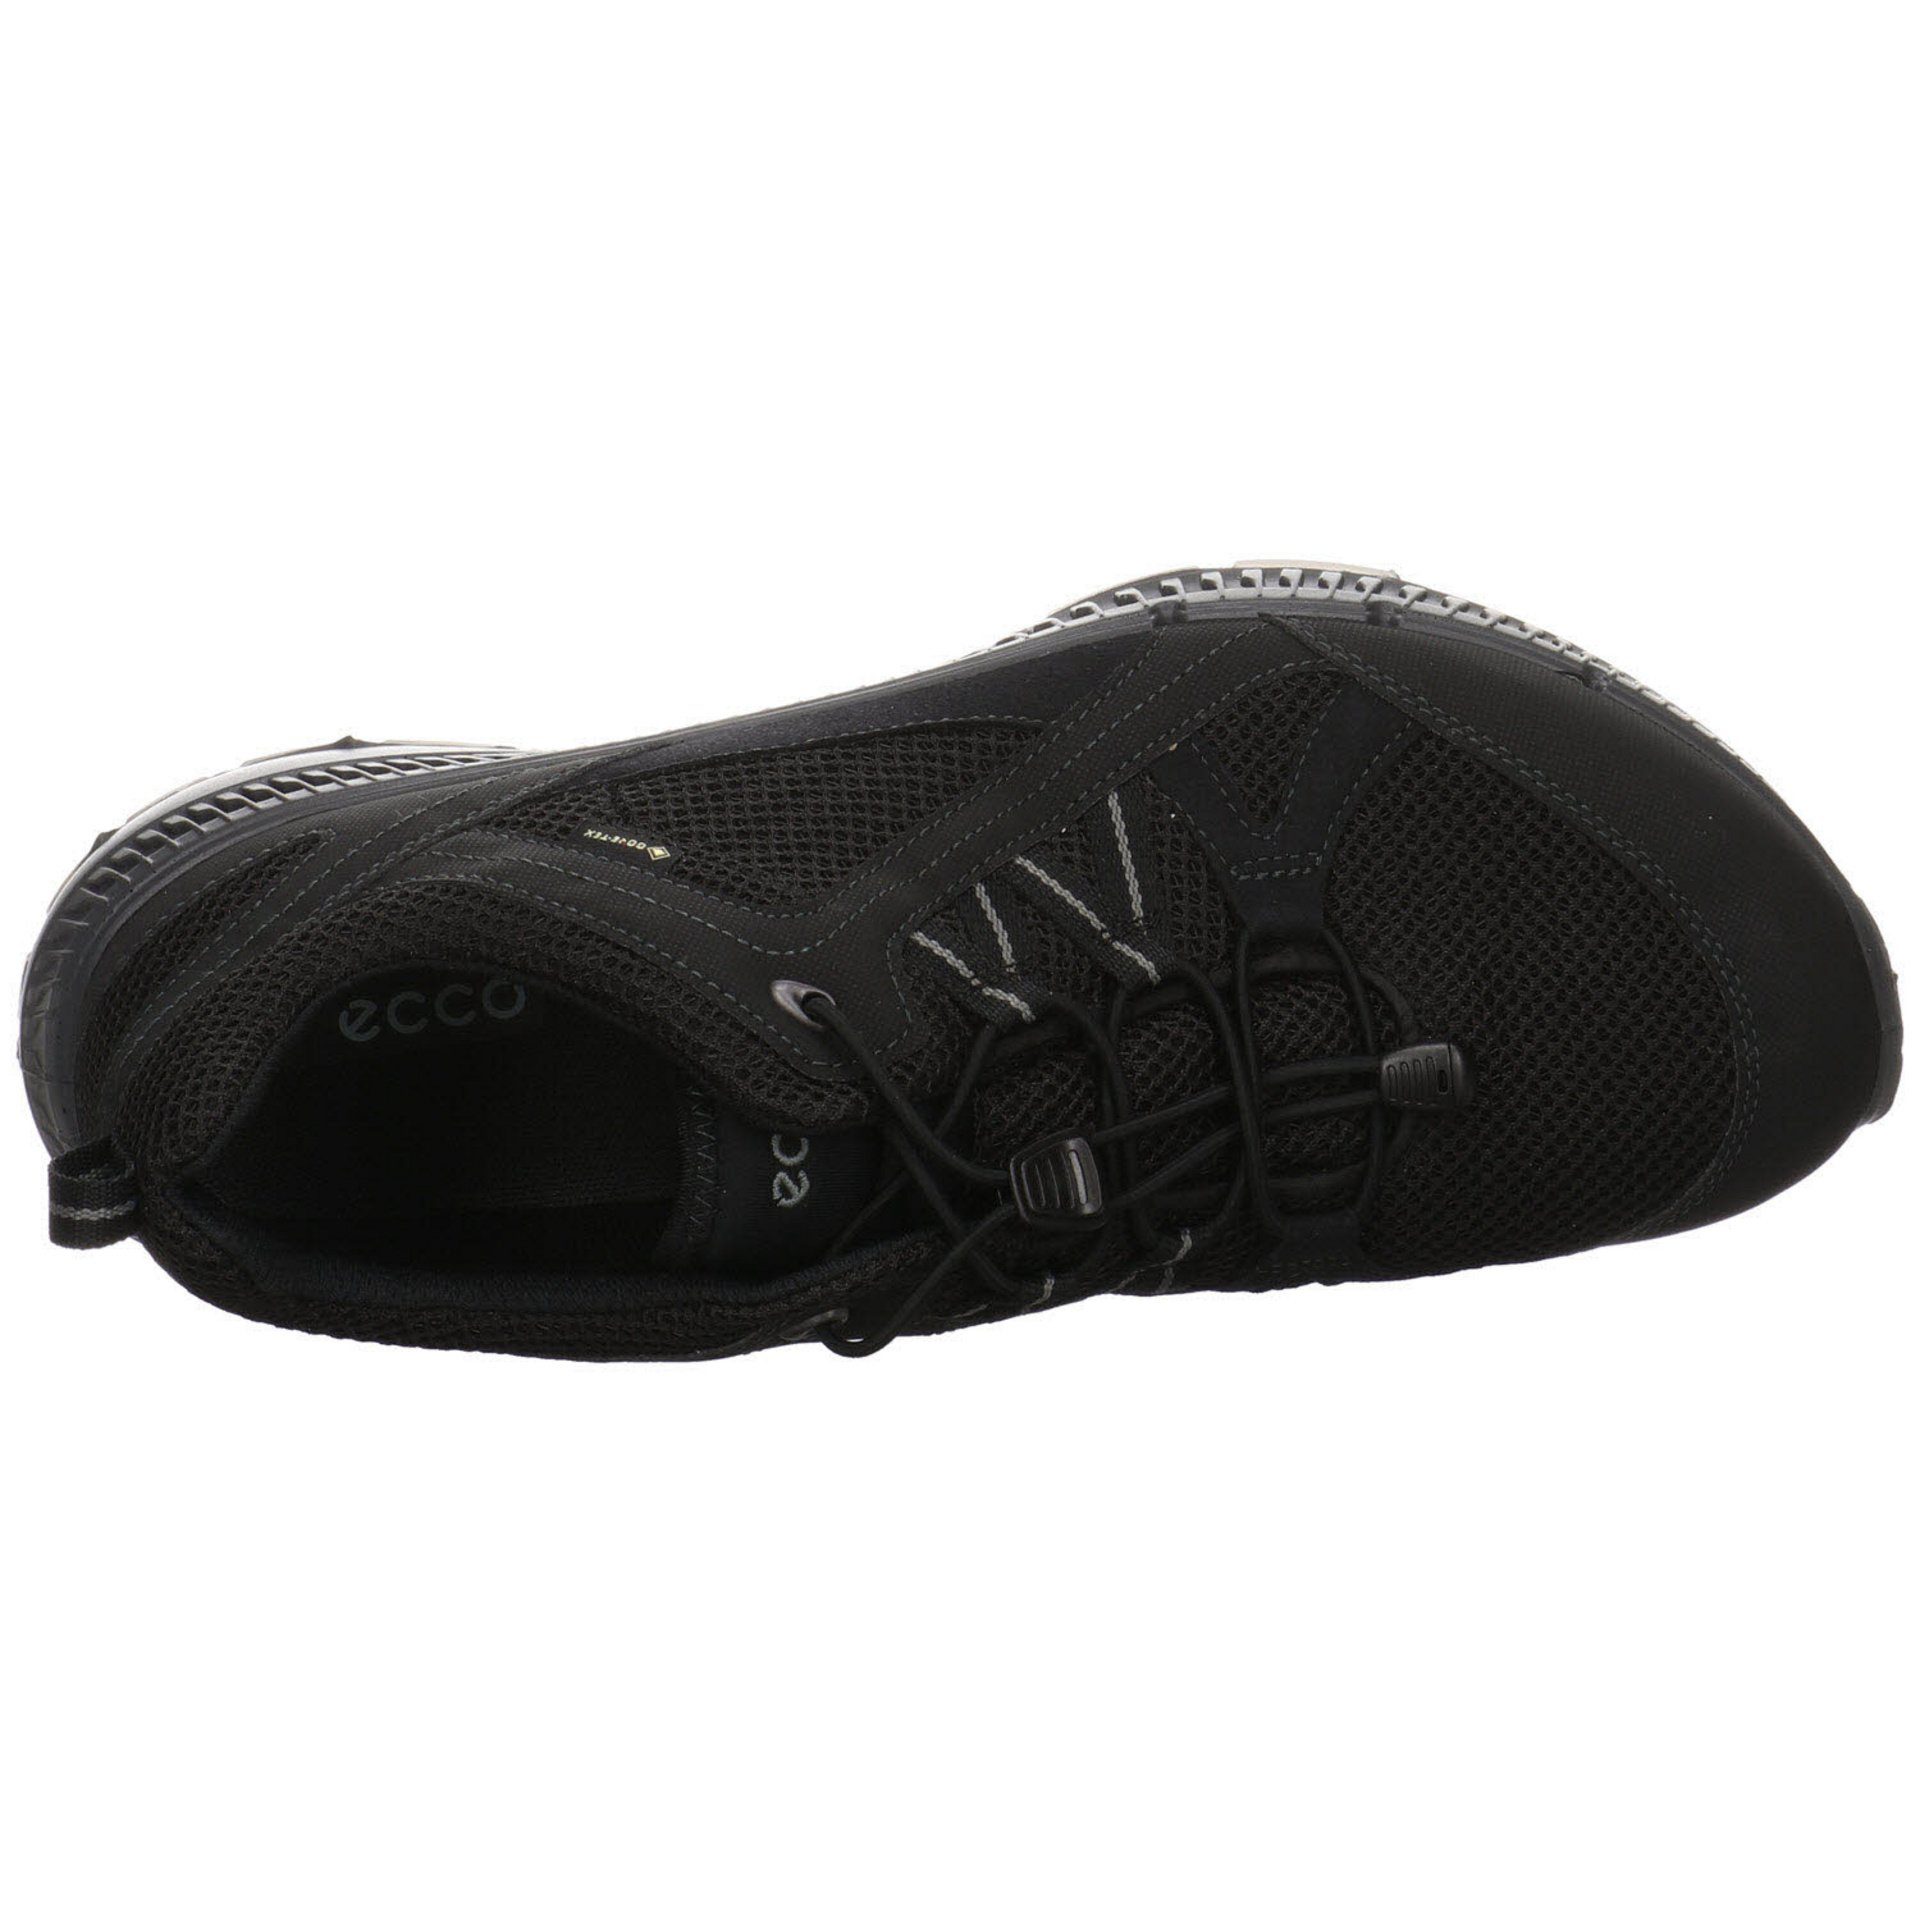 Ecco Herren Outdoor Schuhe GTX Synthetikkombination Terracruise schwarz Outdoorschuh dunkel Outdoorschuh